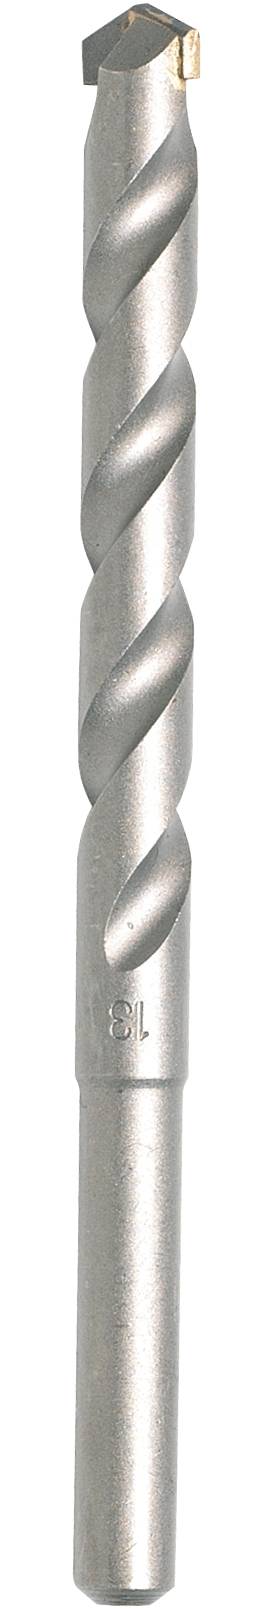 MAKITA Hartmetall Stein-Spiralbohrer 6 mm Makita D-05262 Gesamtlänge 150 mm Zylinderschaft 1 St.